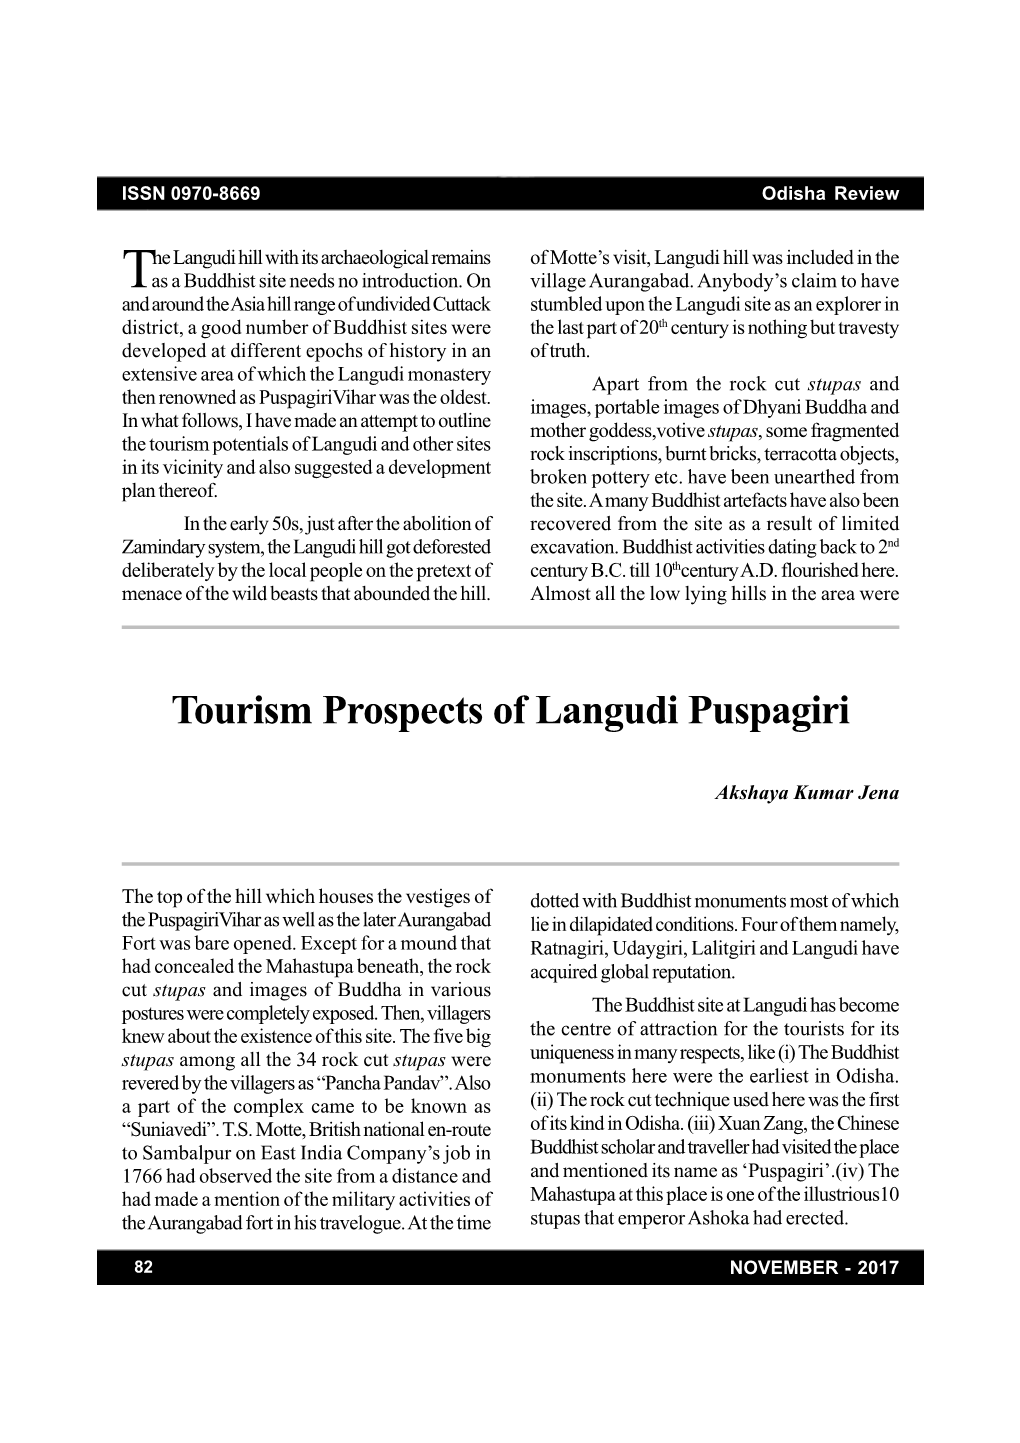 Tourism Prospects of Langudi Puspagiri